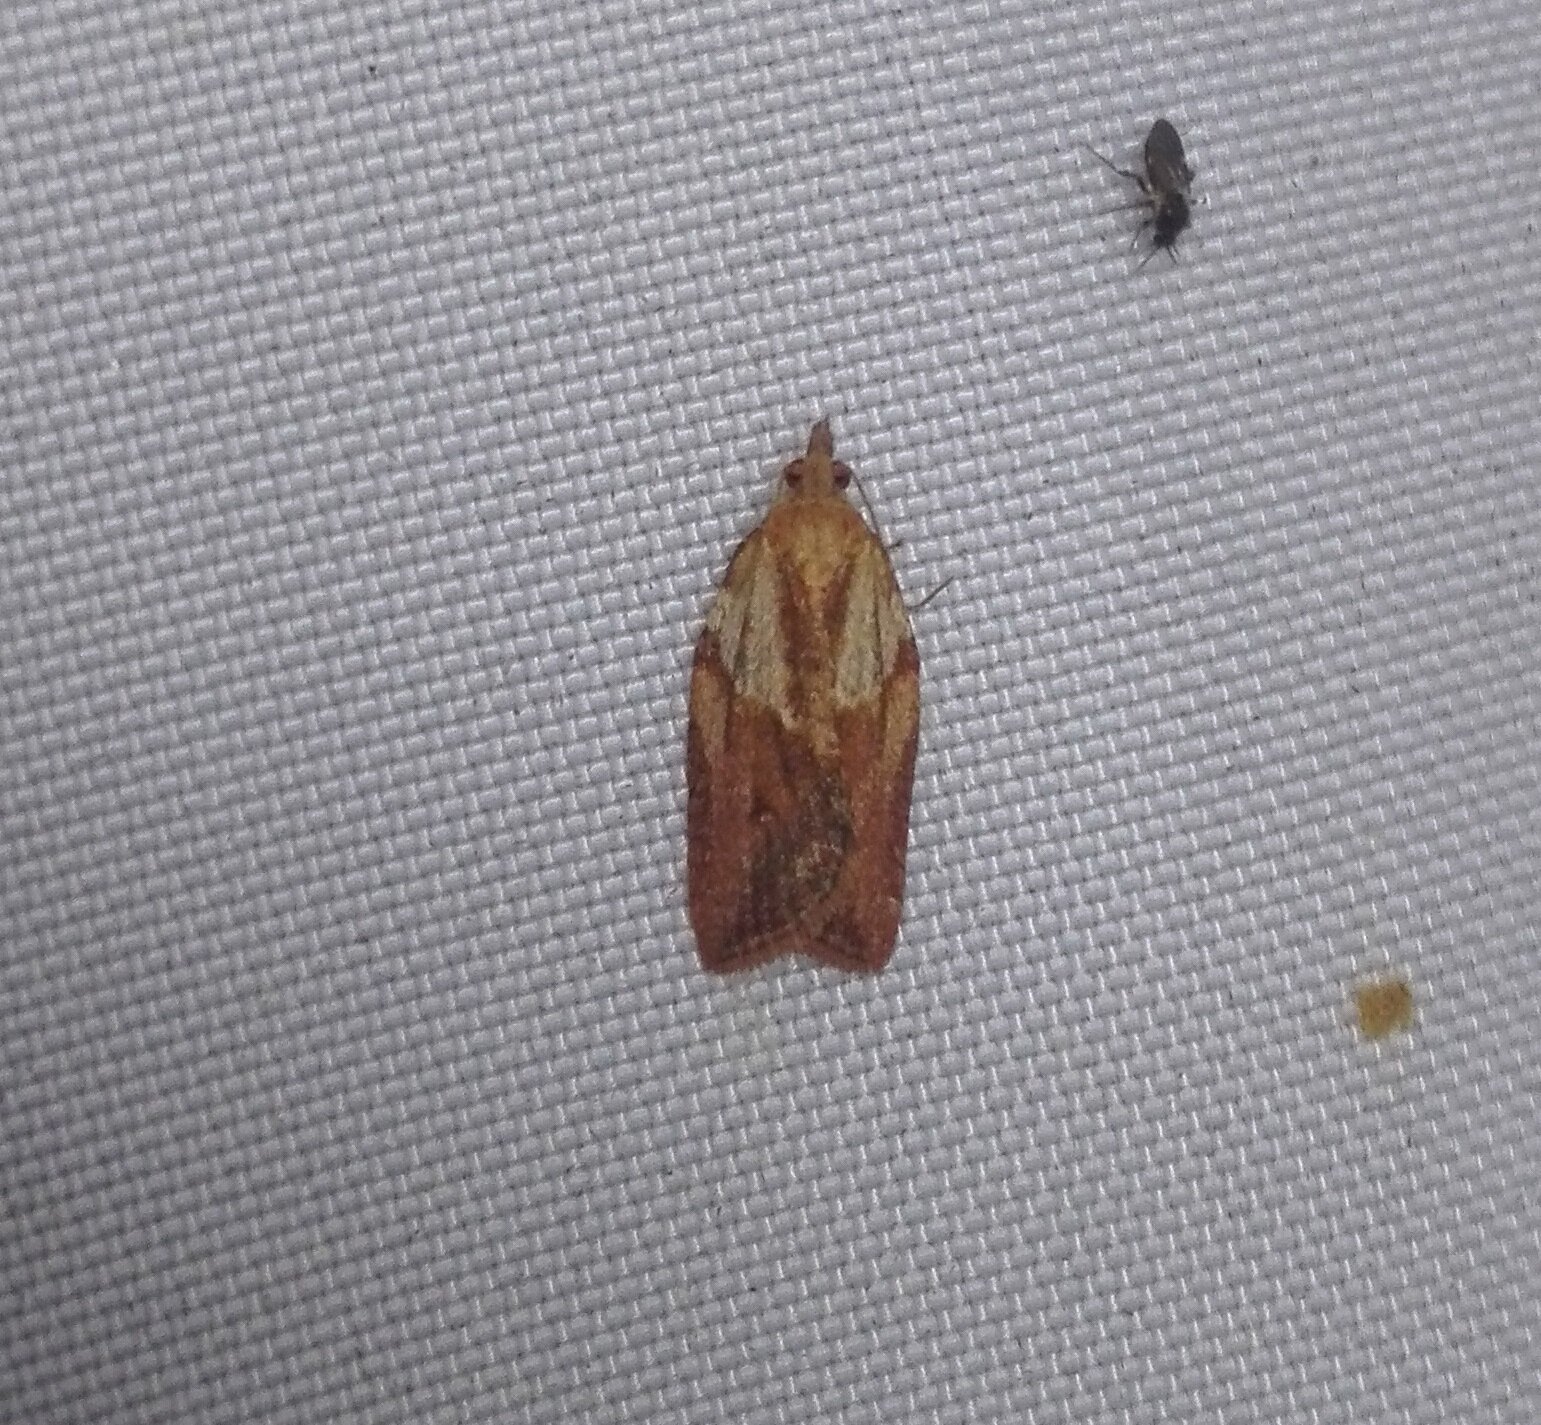 #317 Light Brown Apple Moth (Epiphyas postvittana)